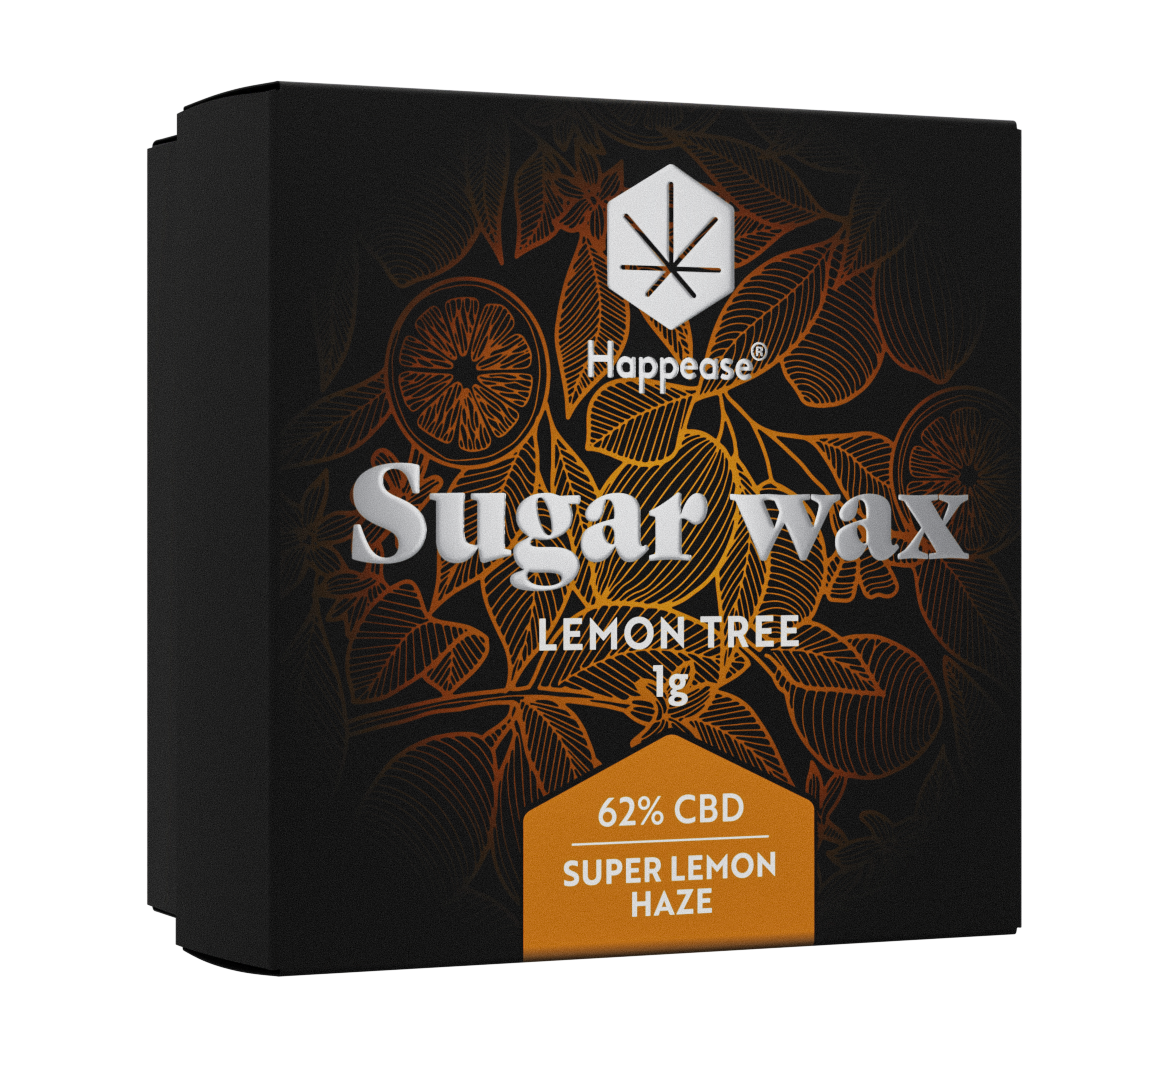 Happease_Sugar-wax_LT